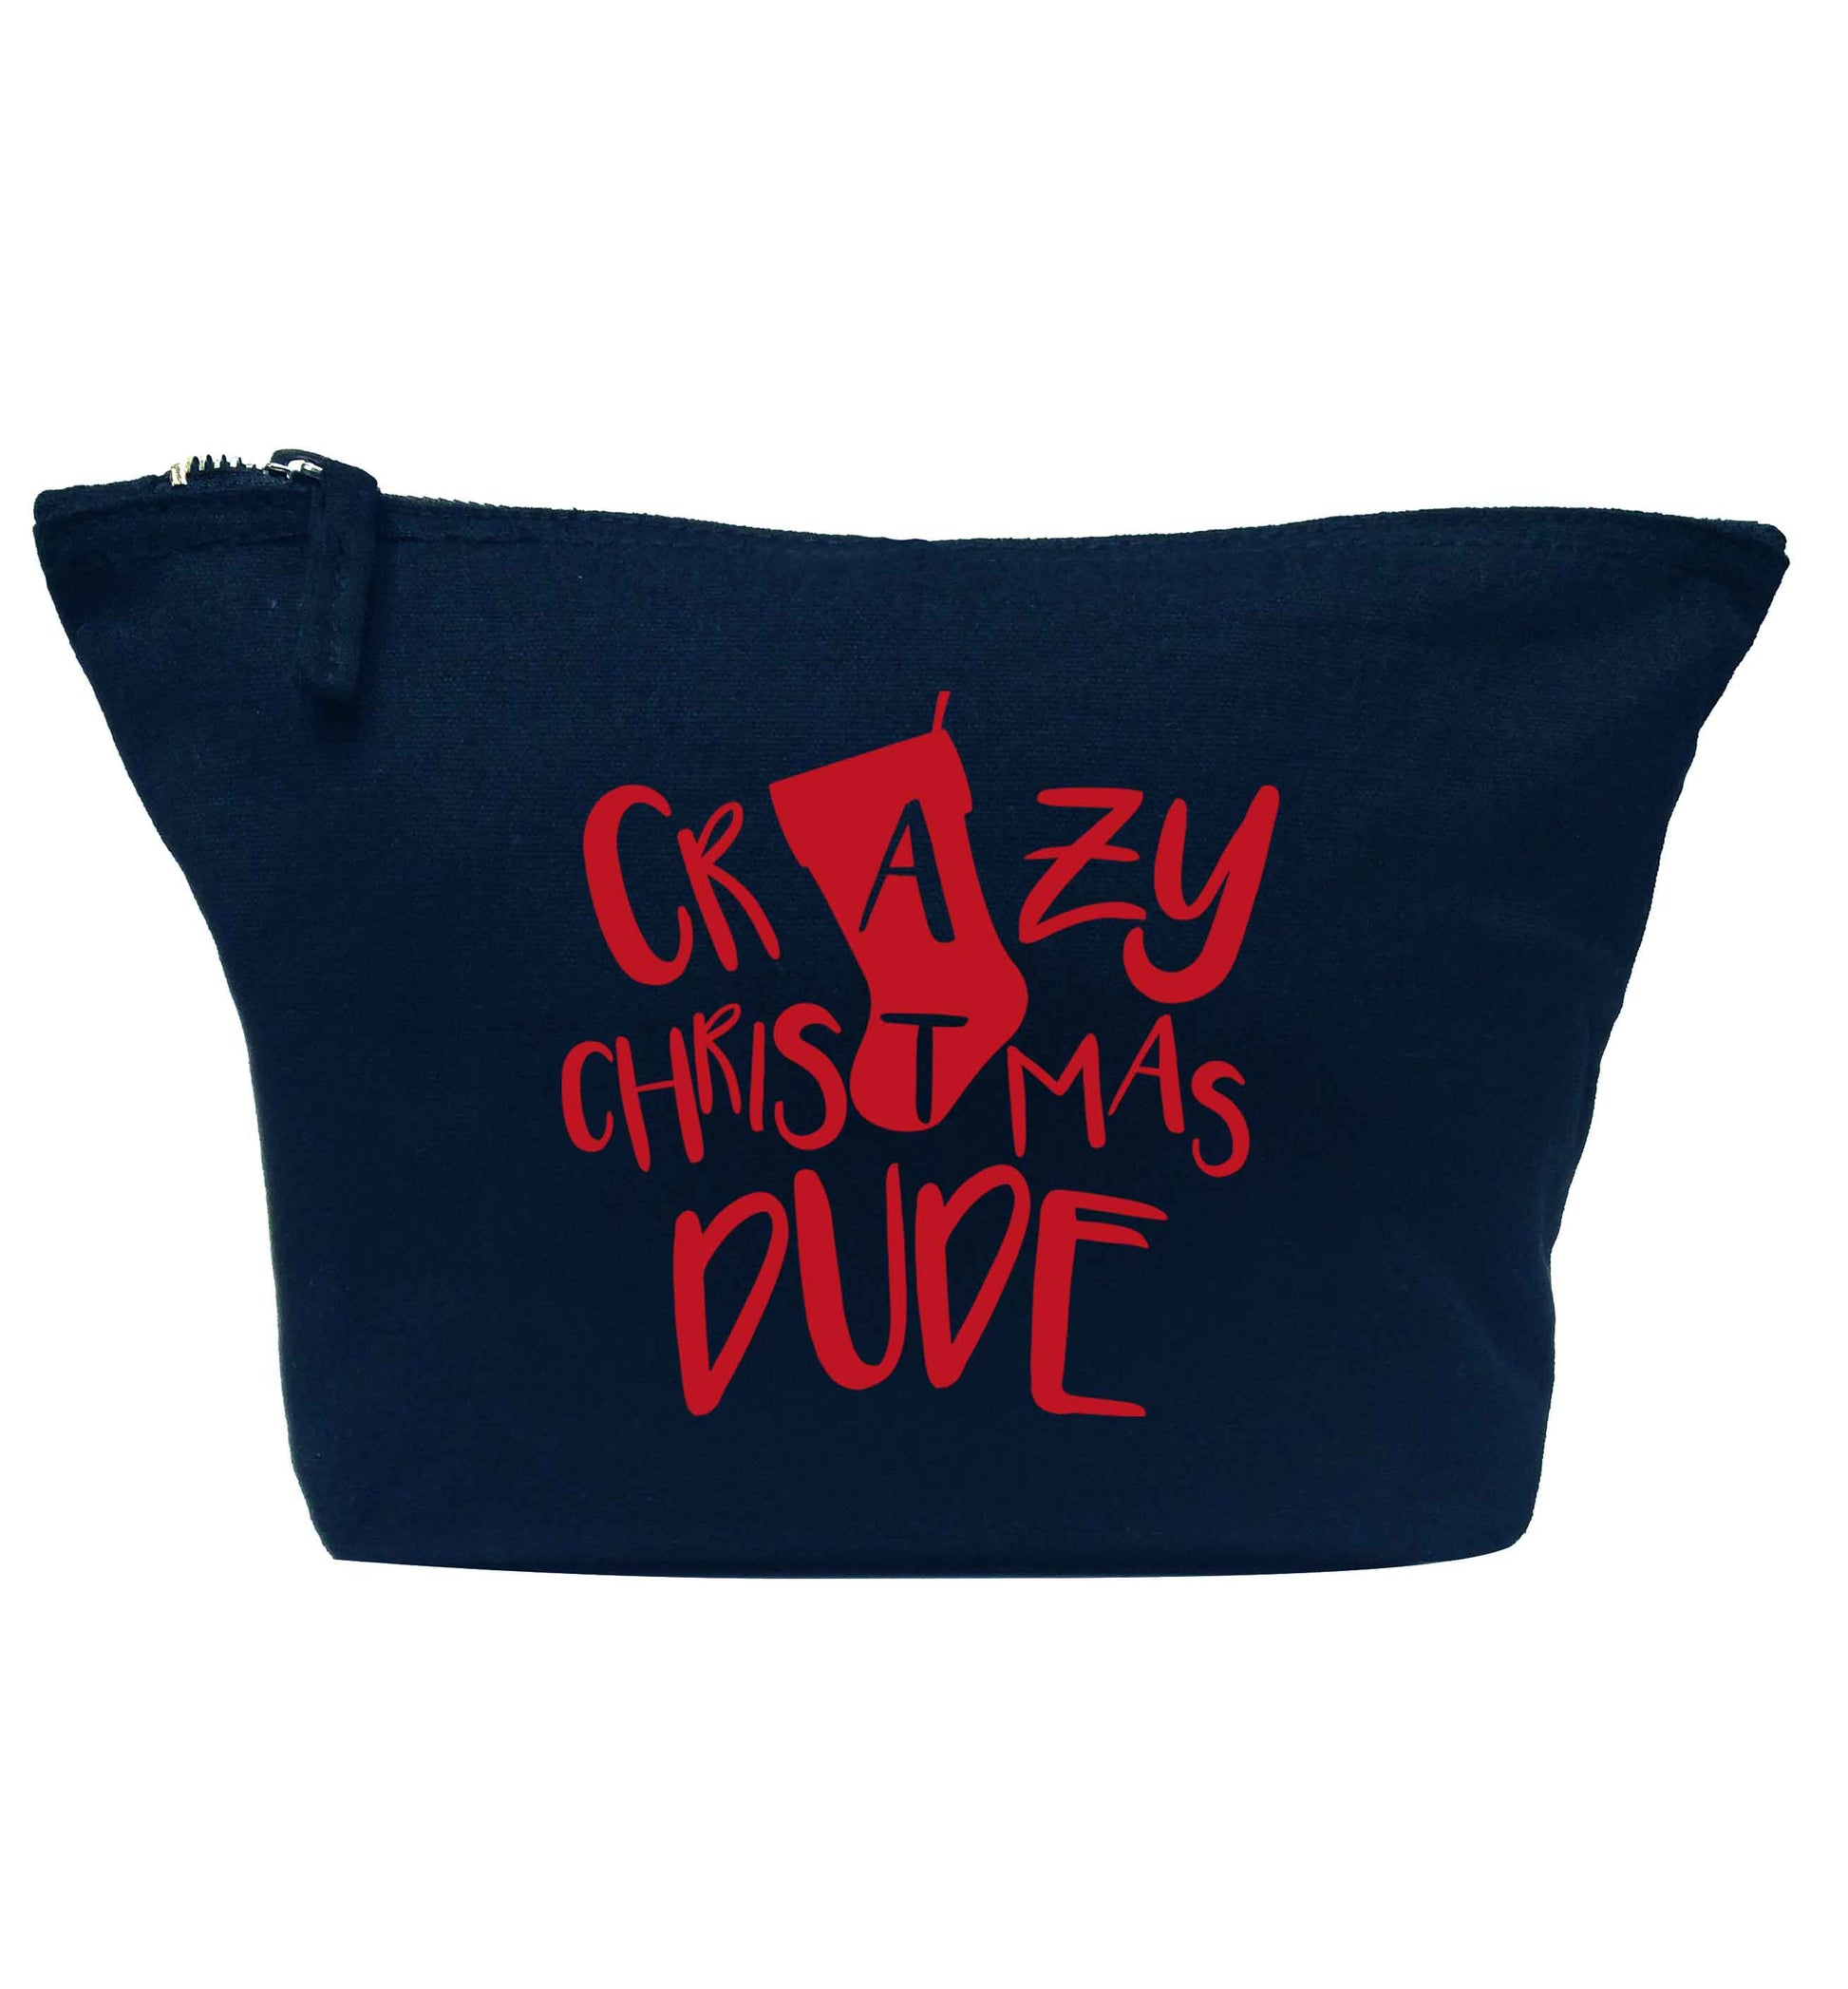 Crazy Christmas Dude navy makeup bag